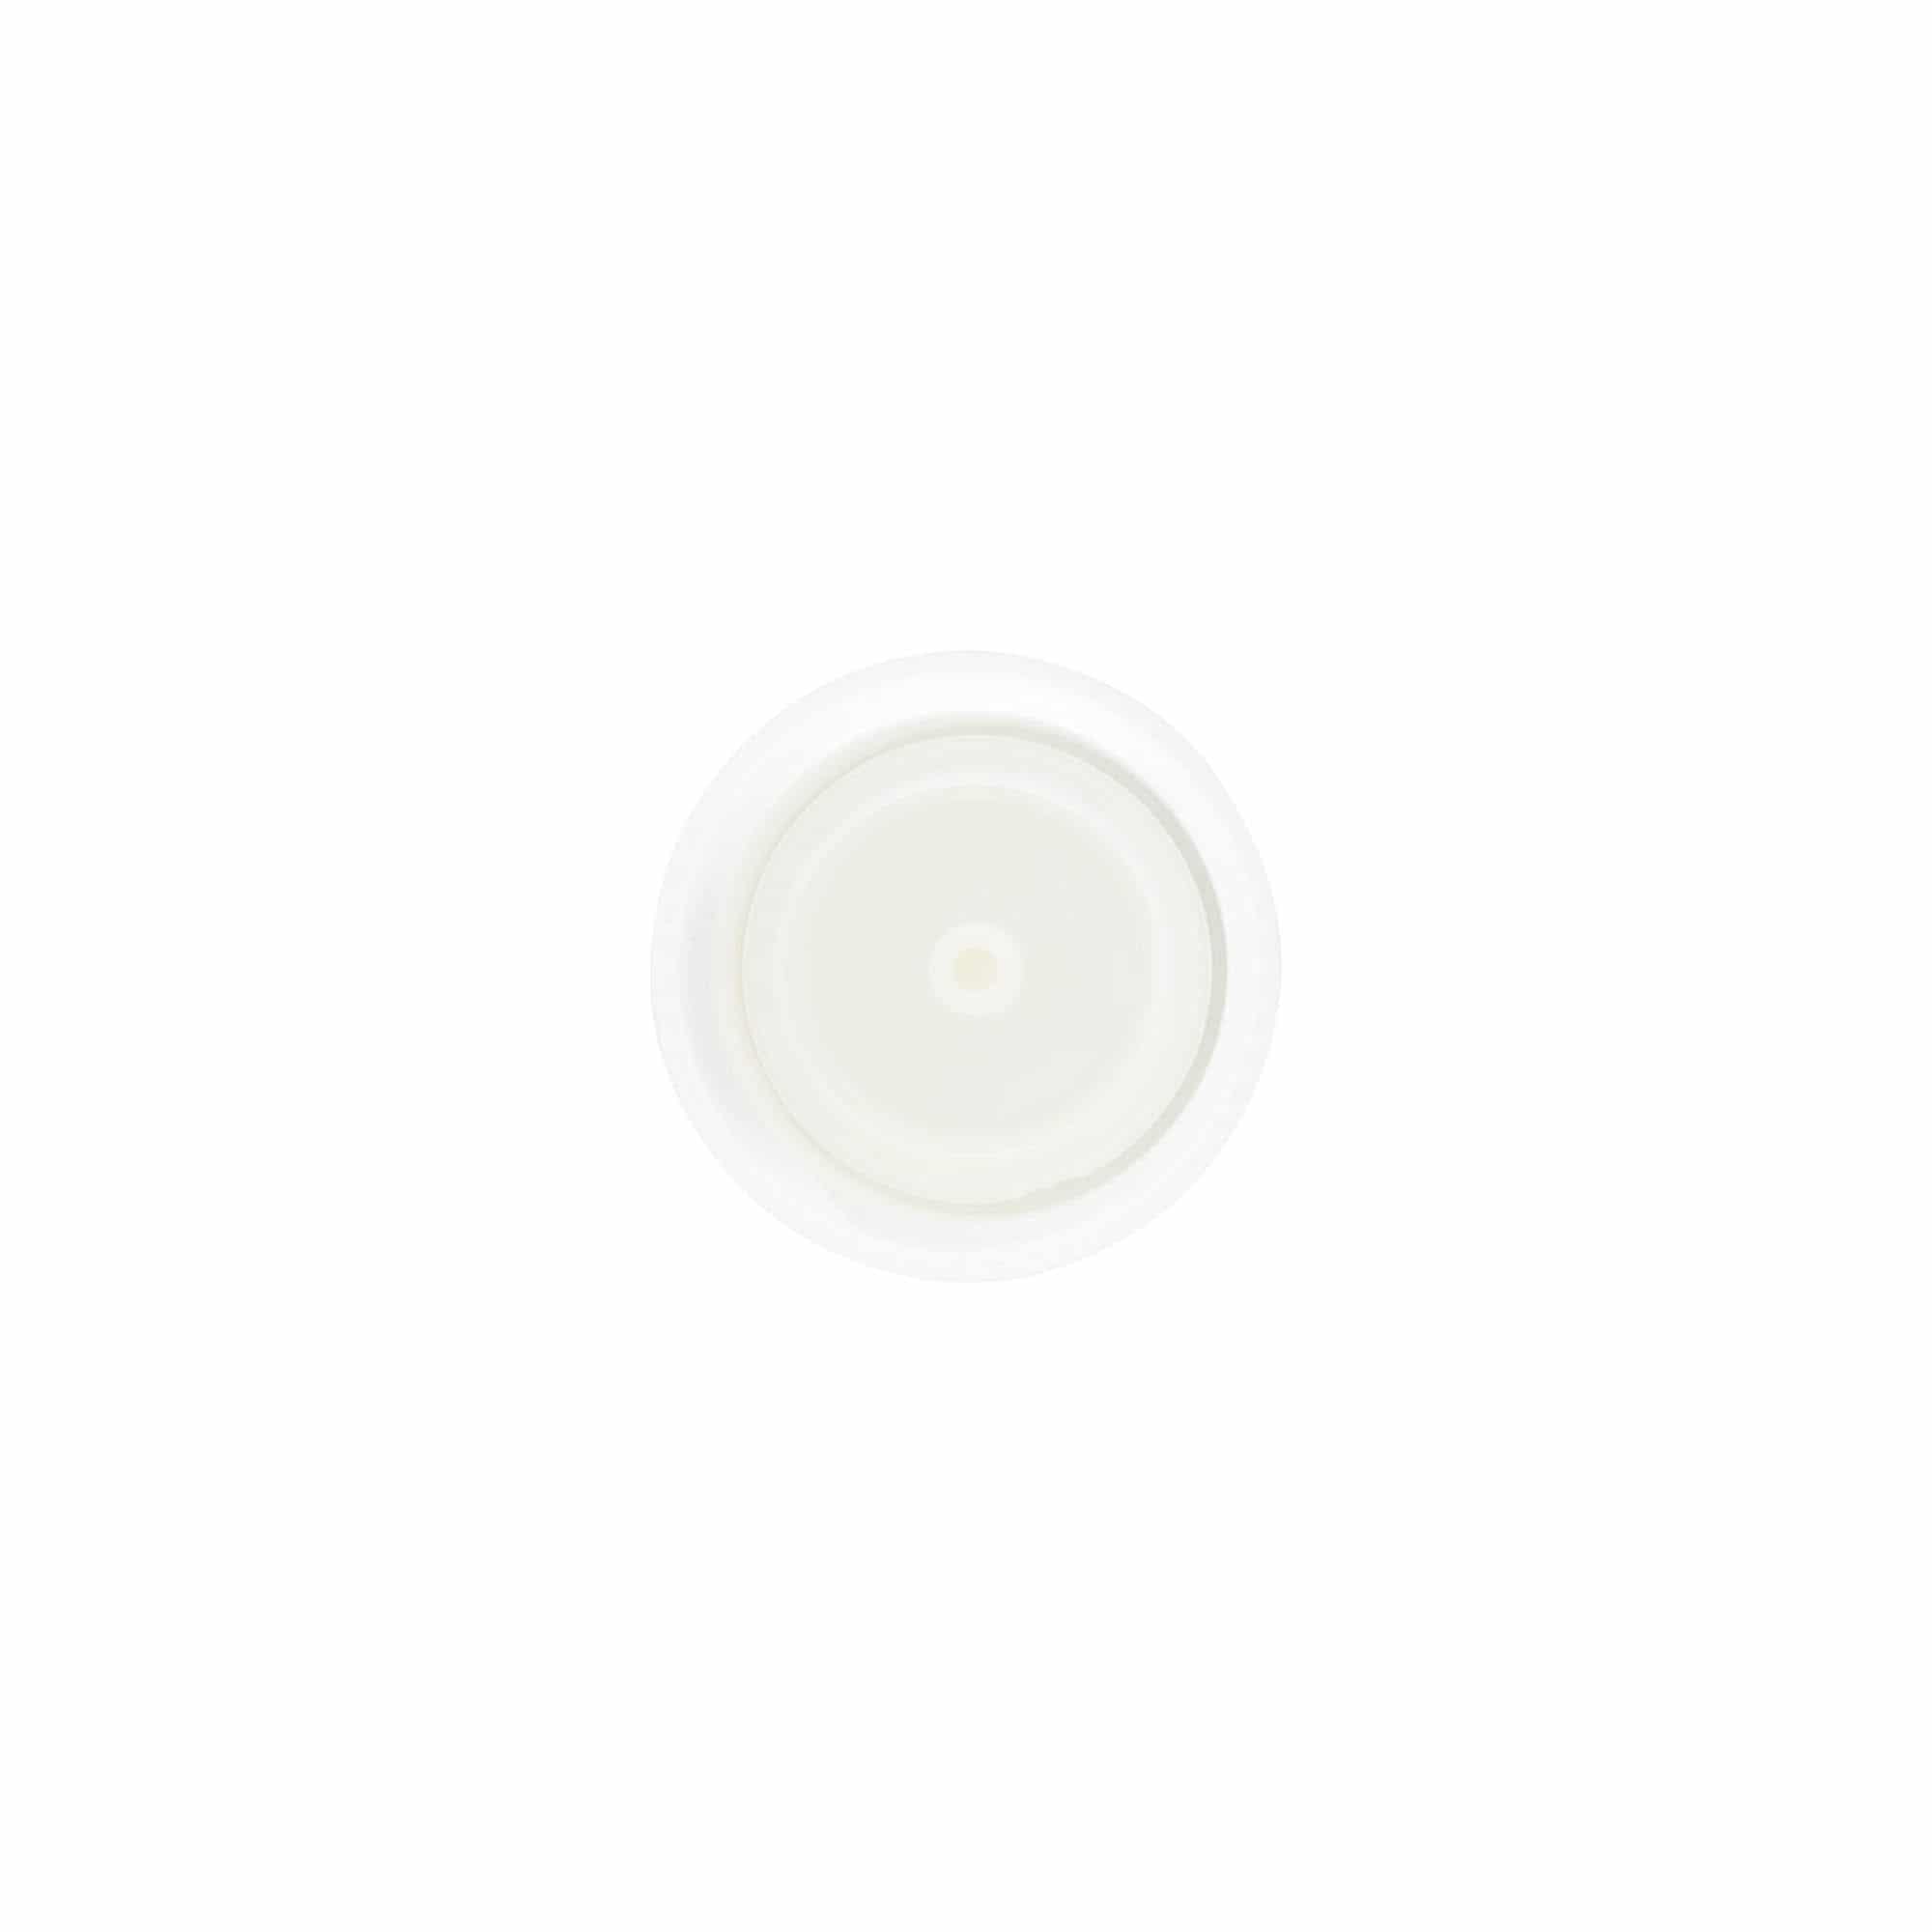 Tapón de rosca con inserto dosificador, plástico de PP, blanco, para boca: GPI 24/410